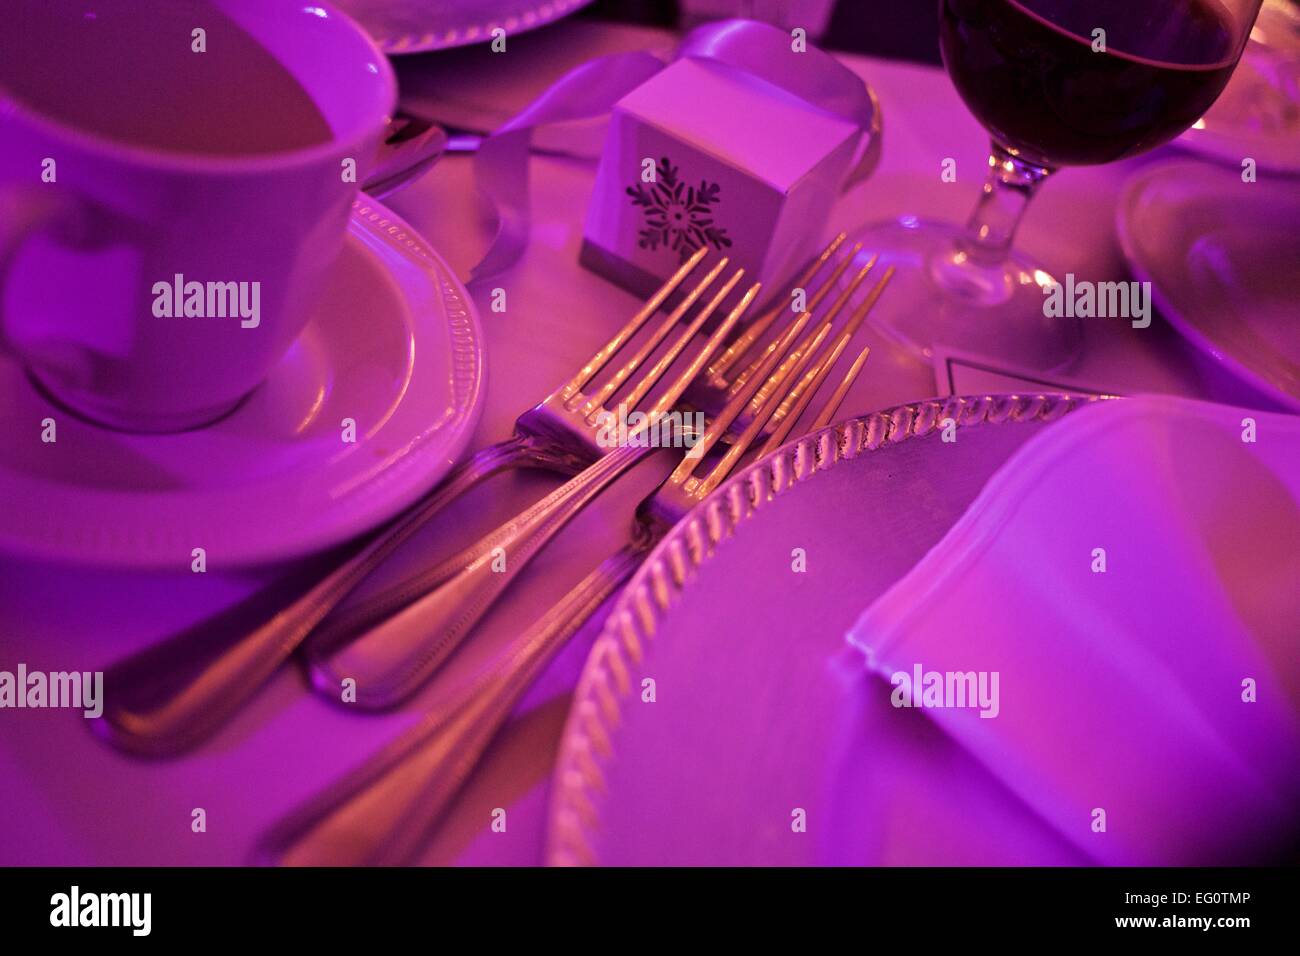 Tischdekoration bei einer Hochzeitsfeier mit Gabeln Tassen und Teller in lila Licht getaucht Stockfoto